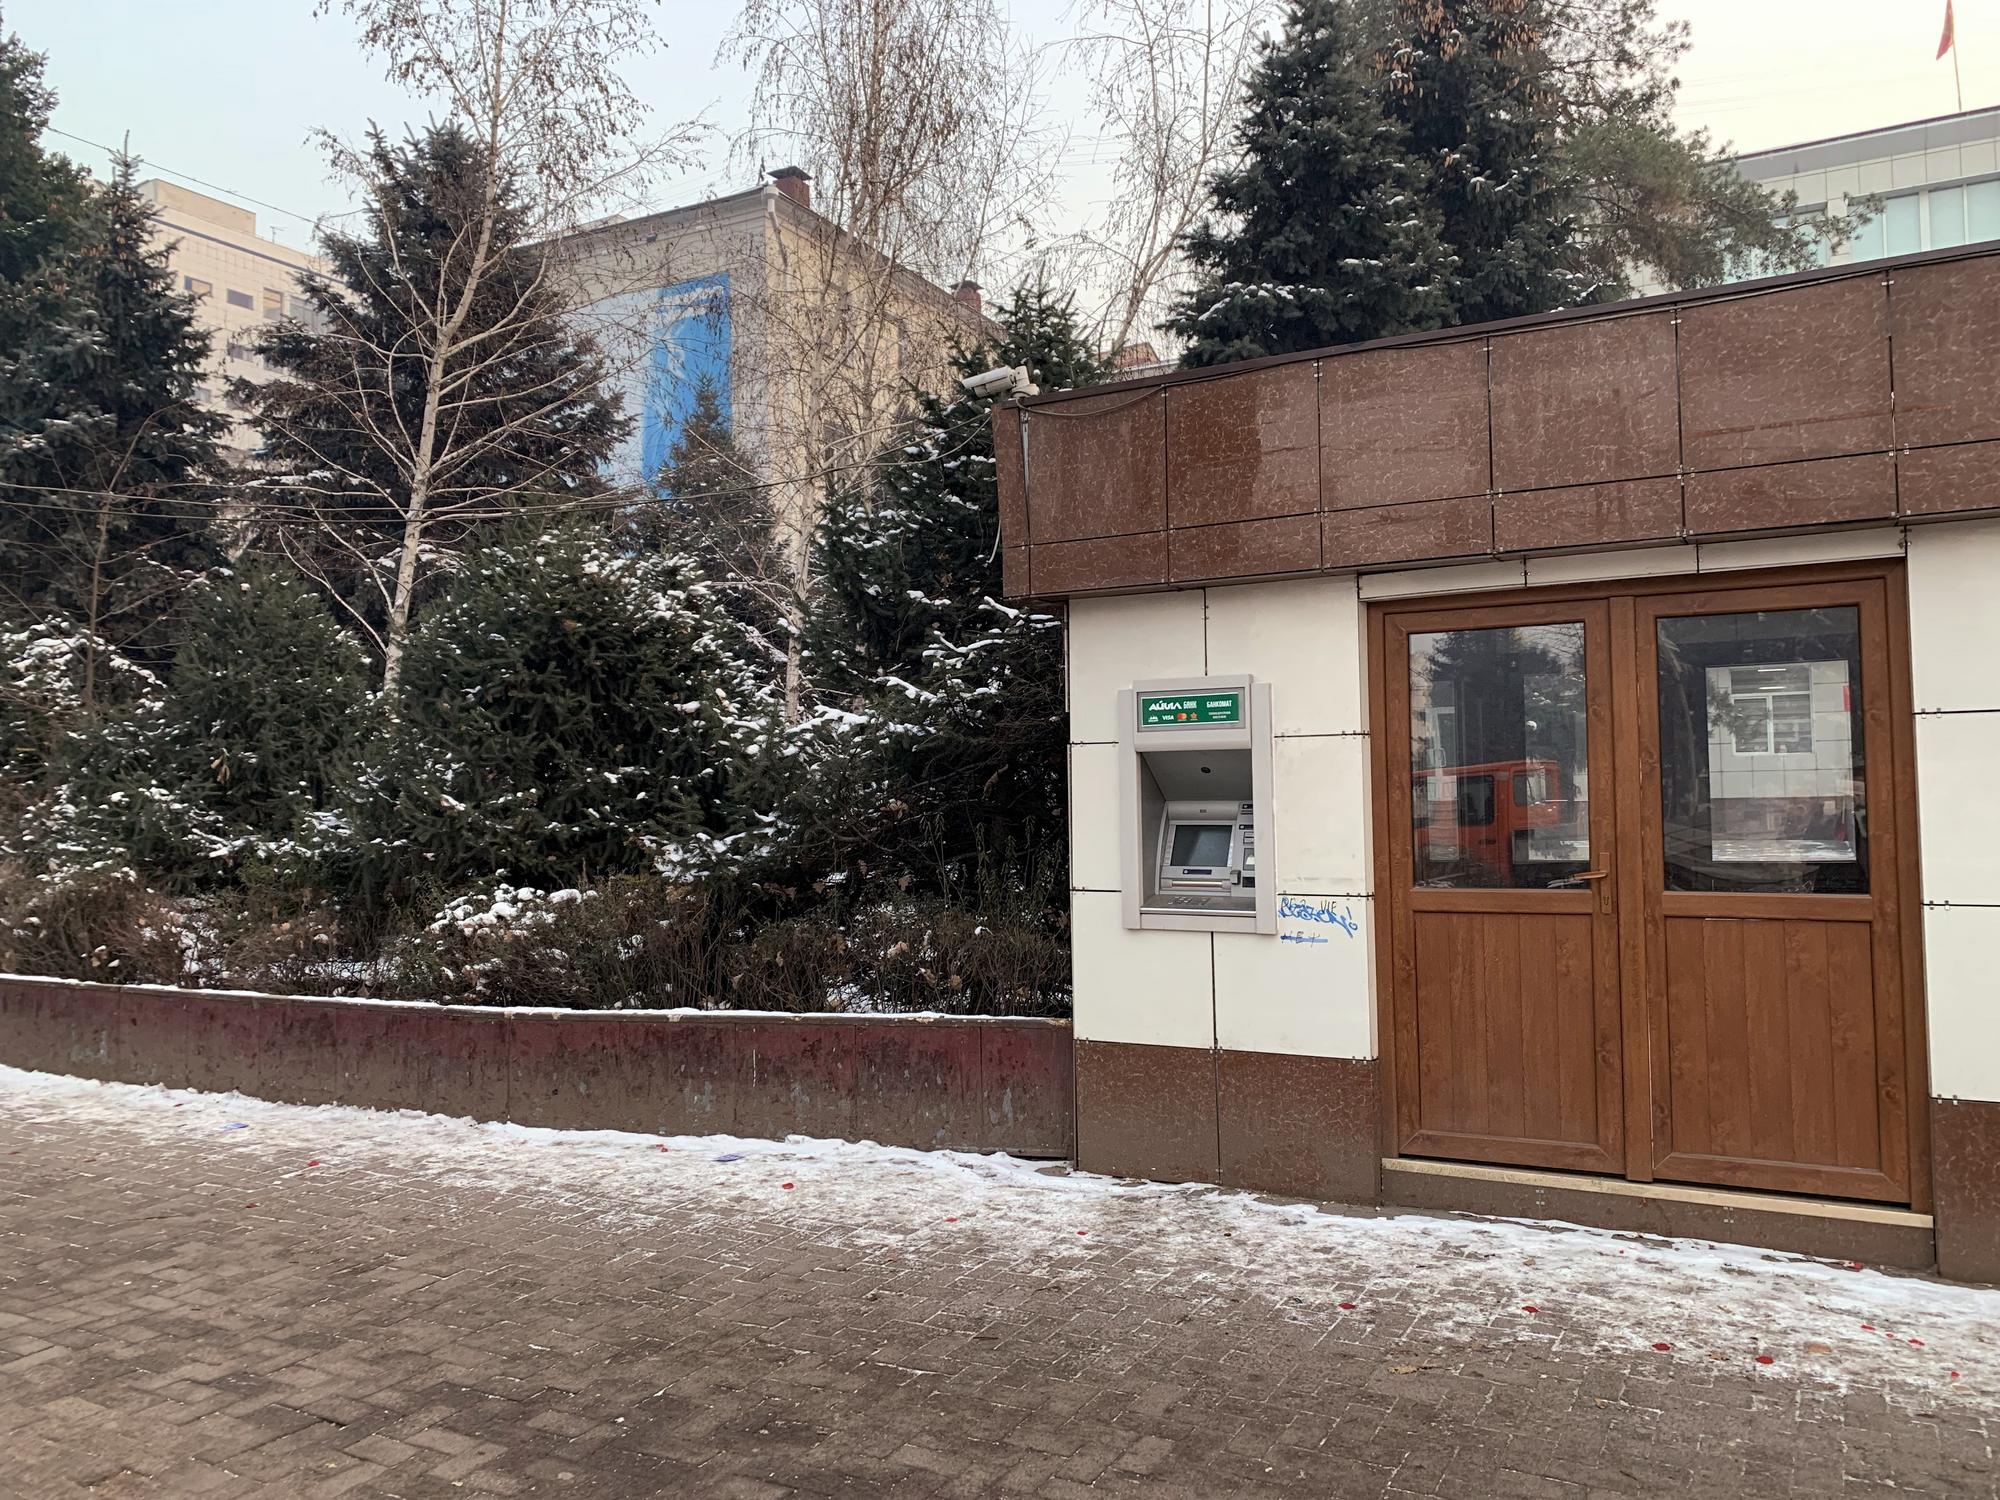 🇰🇬 Бишкек, Кыргызстан, декабрь 2022.